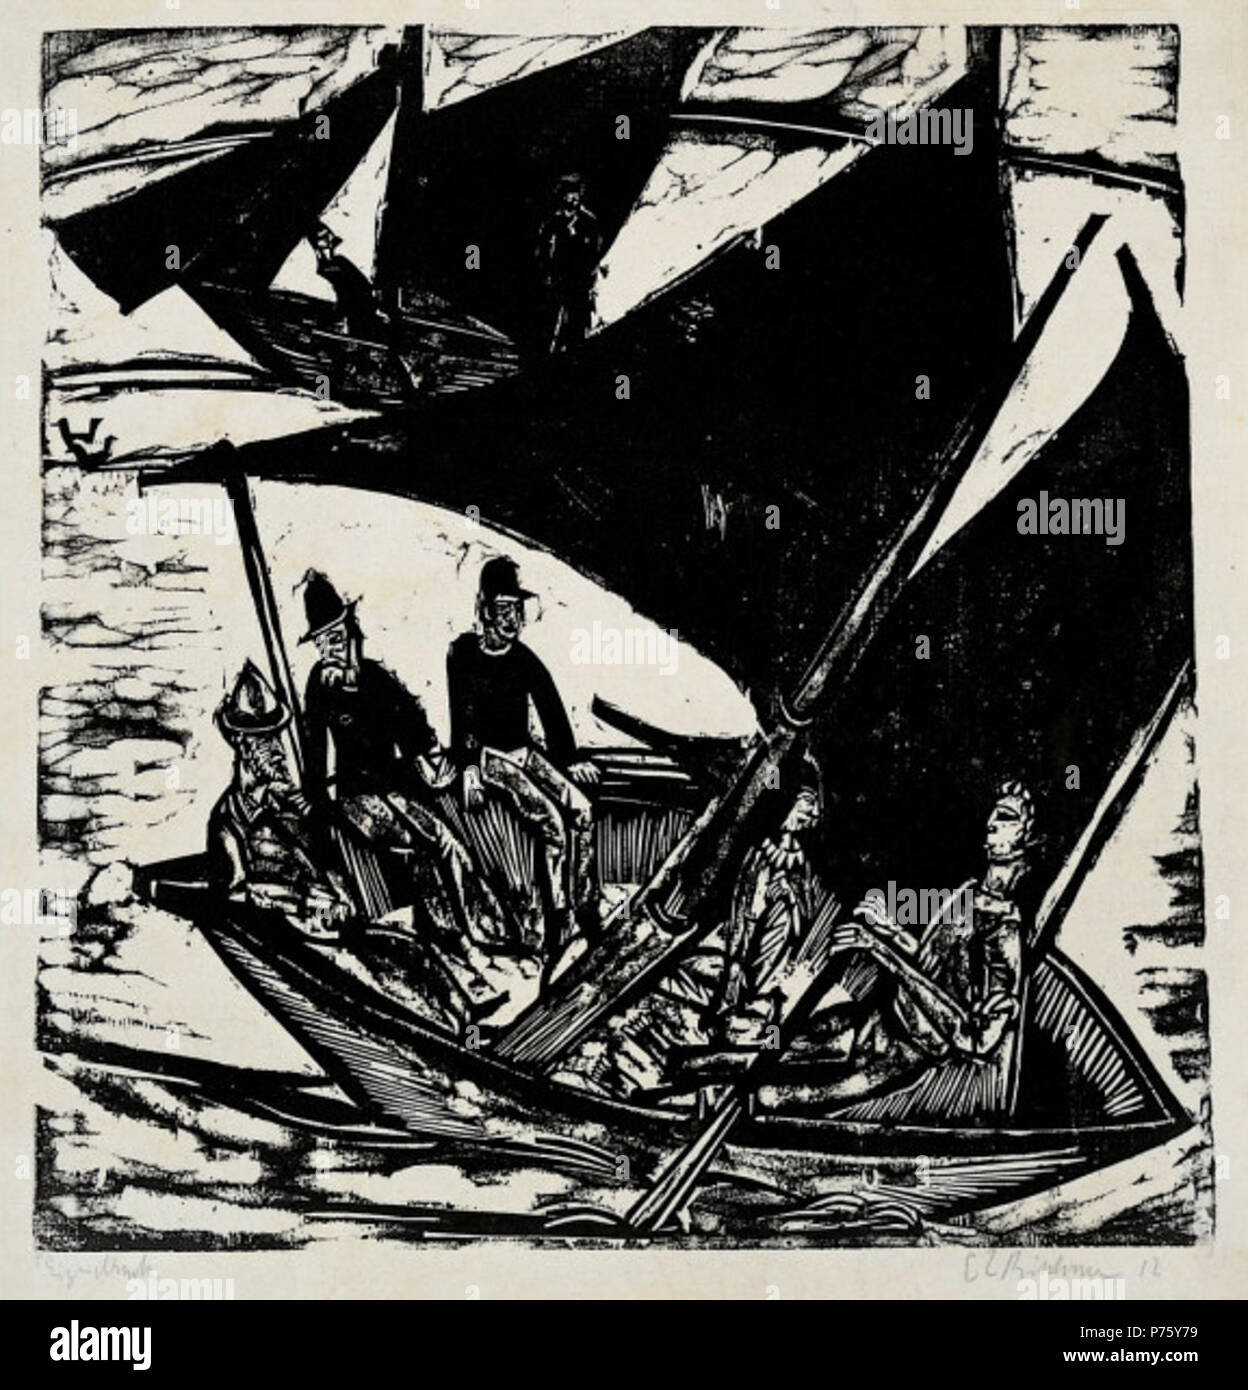 Segelboote auf Fehmarn. Holzschnitt mit schwarzen waschen Ergänzungen, staatliche aii/III. Block: 16 1/2 x 15 7/8 in. (41,9 x 40,4 cm); Blatt: 21 3/4 x 17 3/8 in. (55,2 x 44,1 cm). 1914 10 Ernst Ludwig Kirchner - Segelboote auf Fehmarn Stockfoto